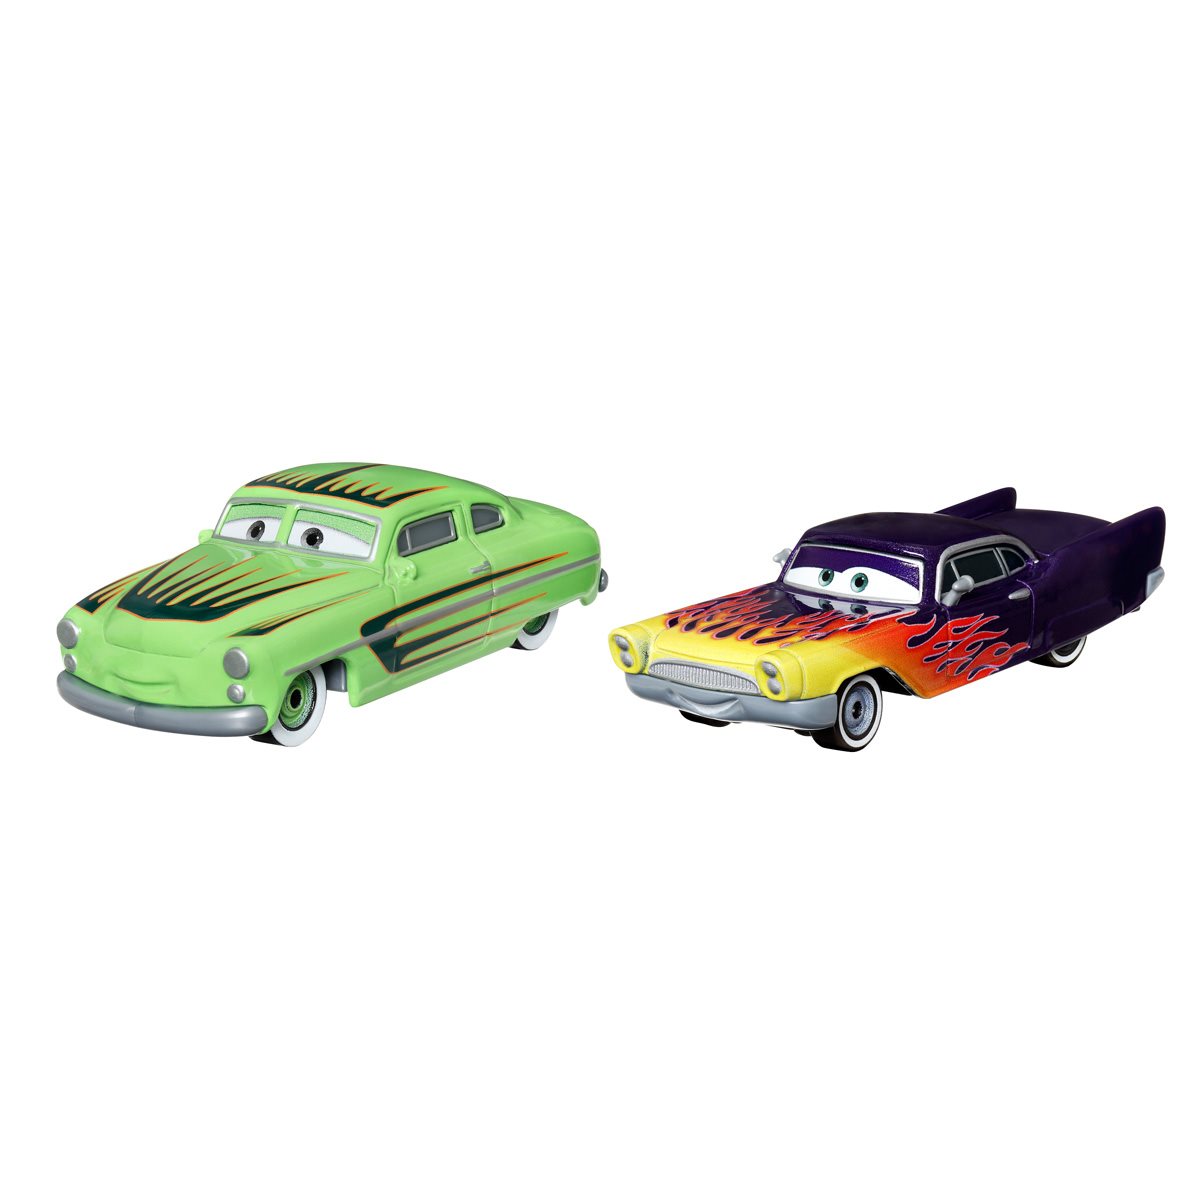 Disney Pixar Cars: Metal Mini Racers (Choose from 12 Characters